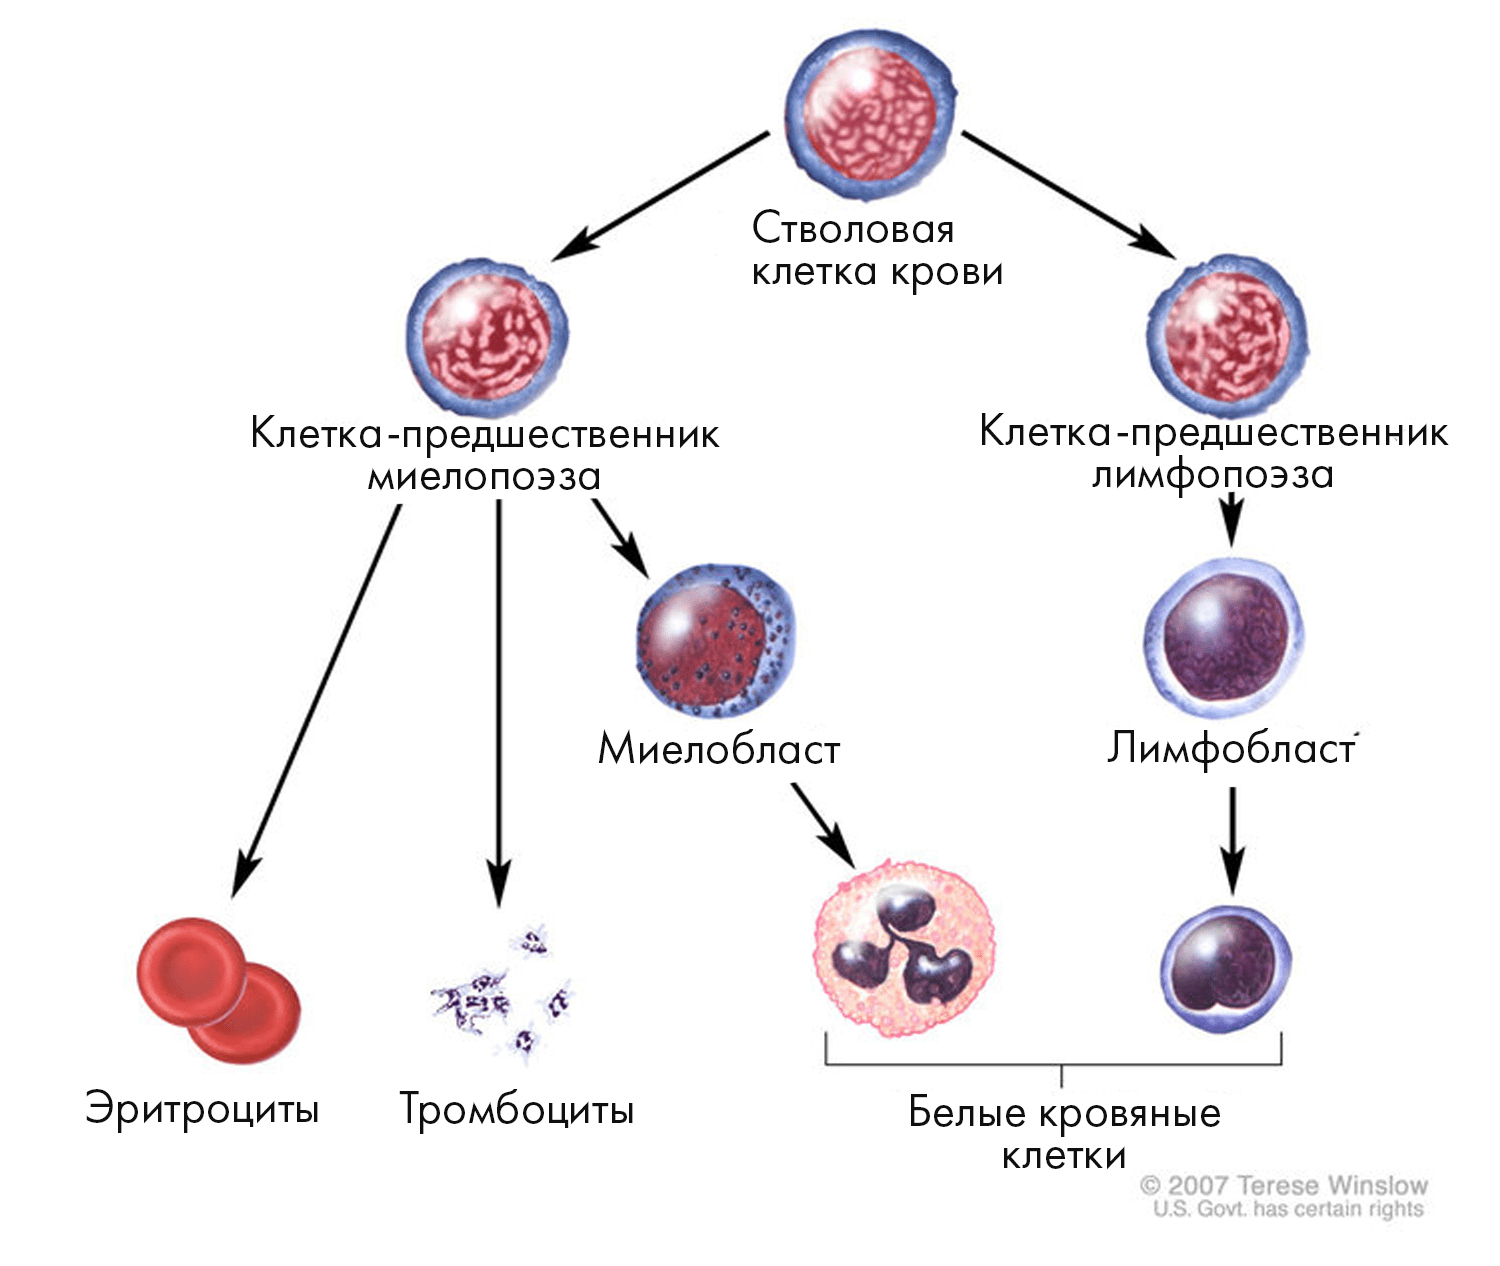 В нормальном гемопоэзе все клетки крови происходят из CD34+ гемопоэтических стволовых клеток